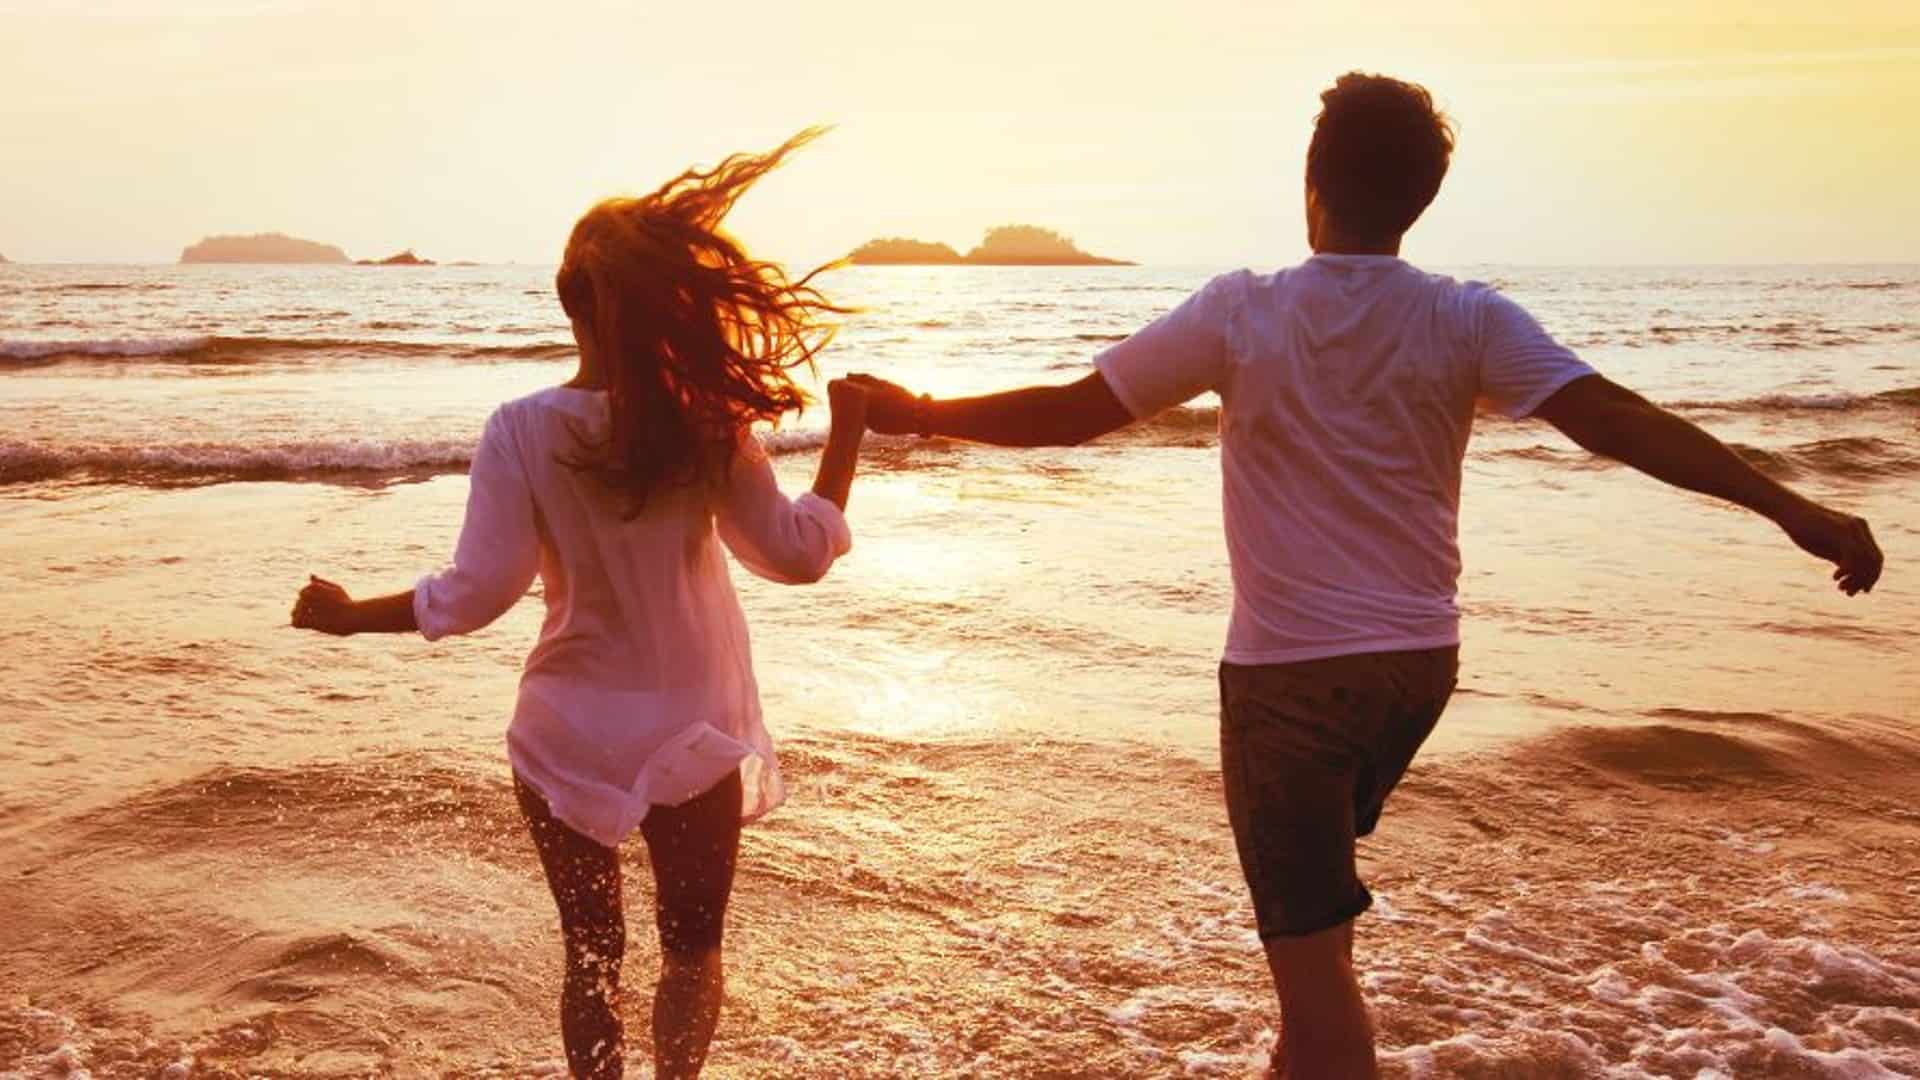 A couple joyfully runs along the beach at sunset.